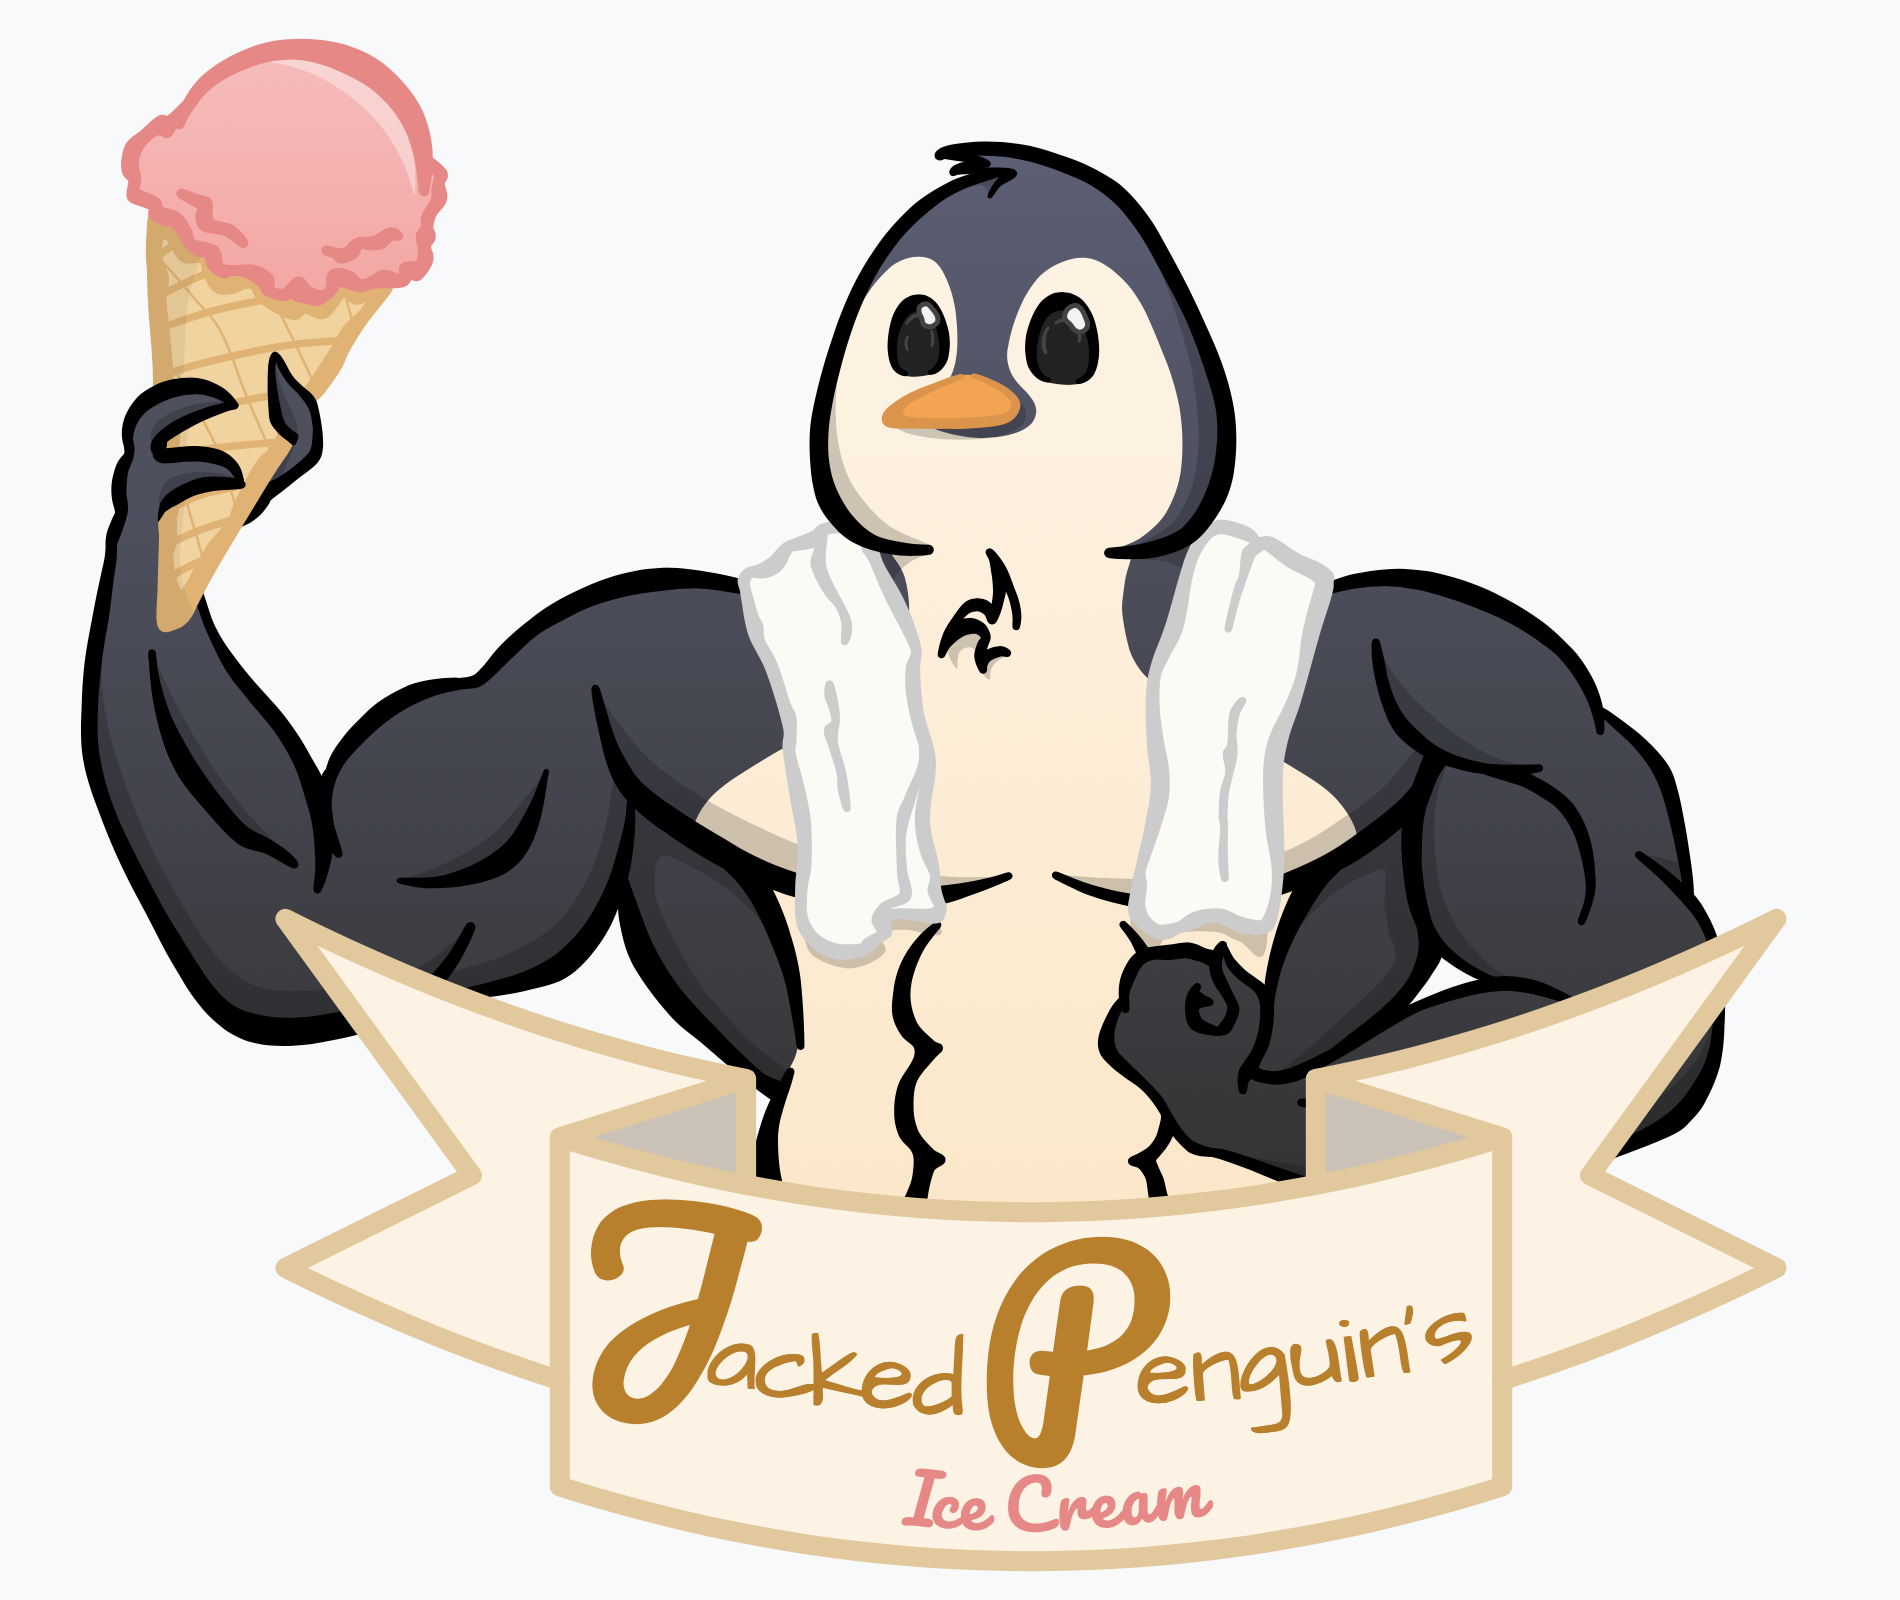 Jacked Penguin's Ice Cream